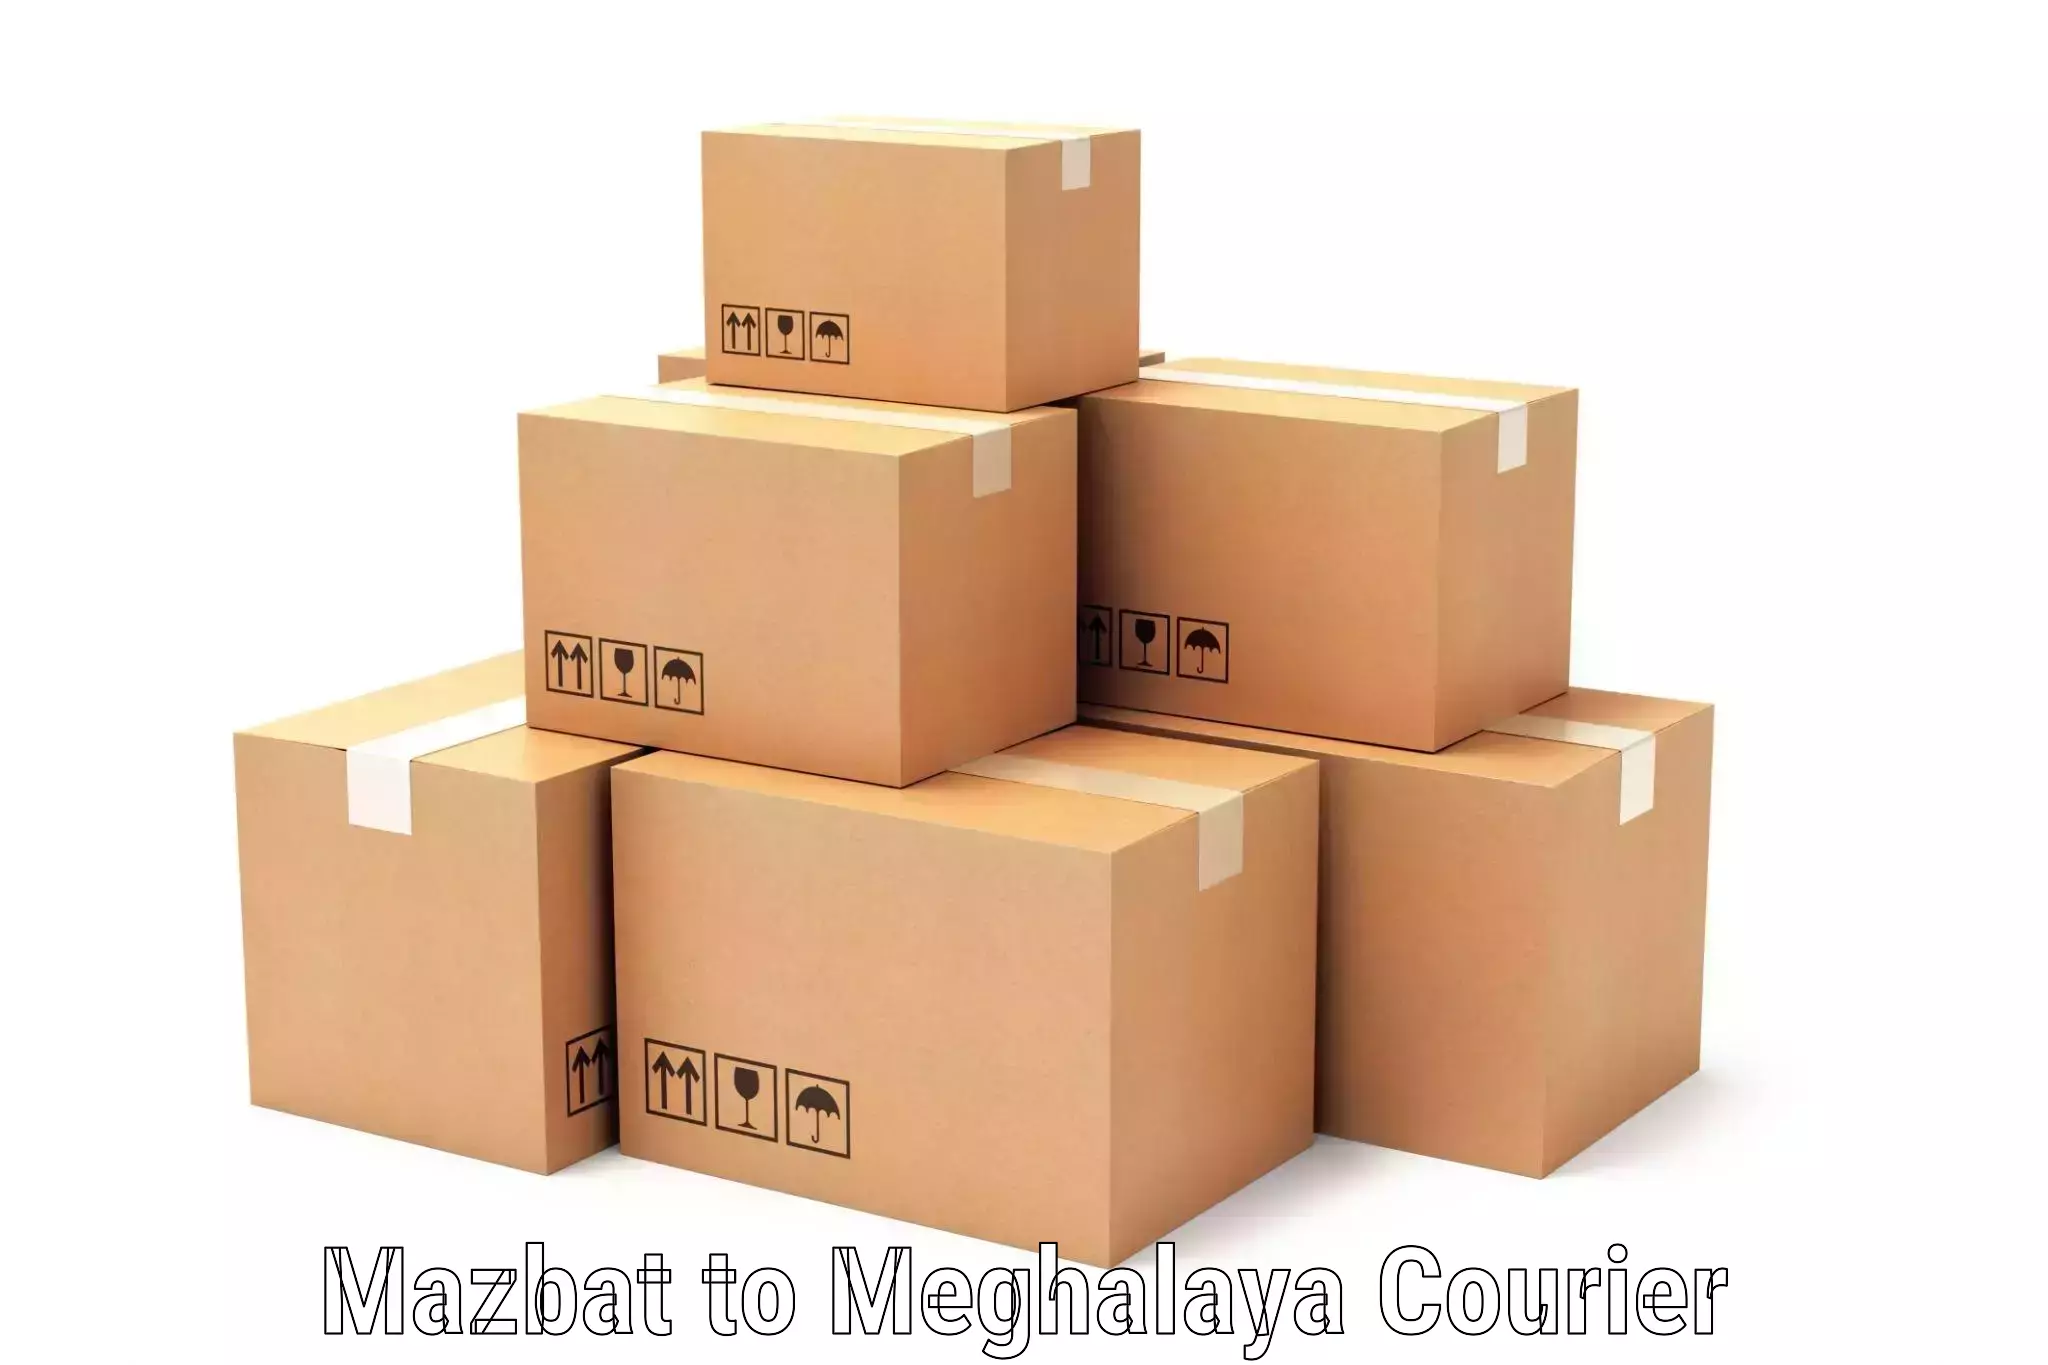 User-friendly courier app Mazbat to West Khasi Hills